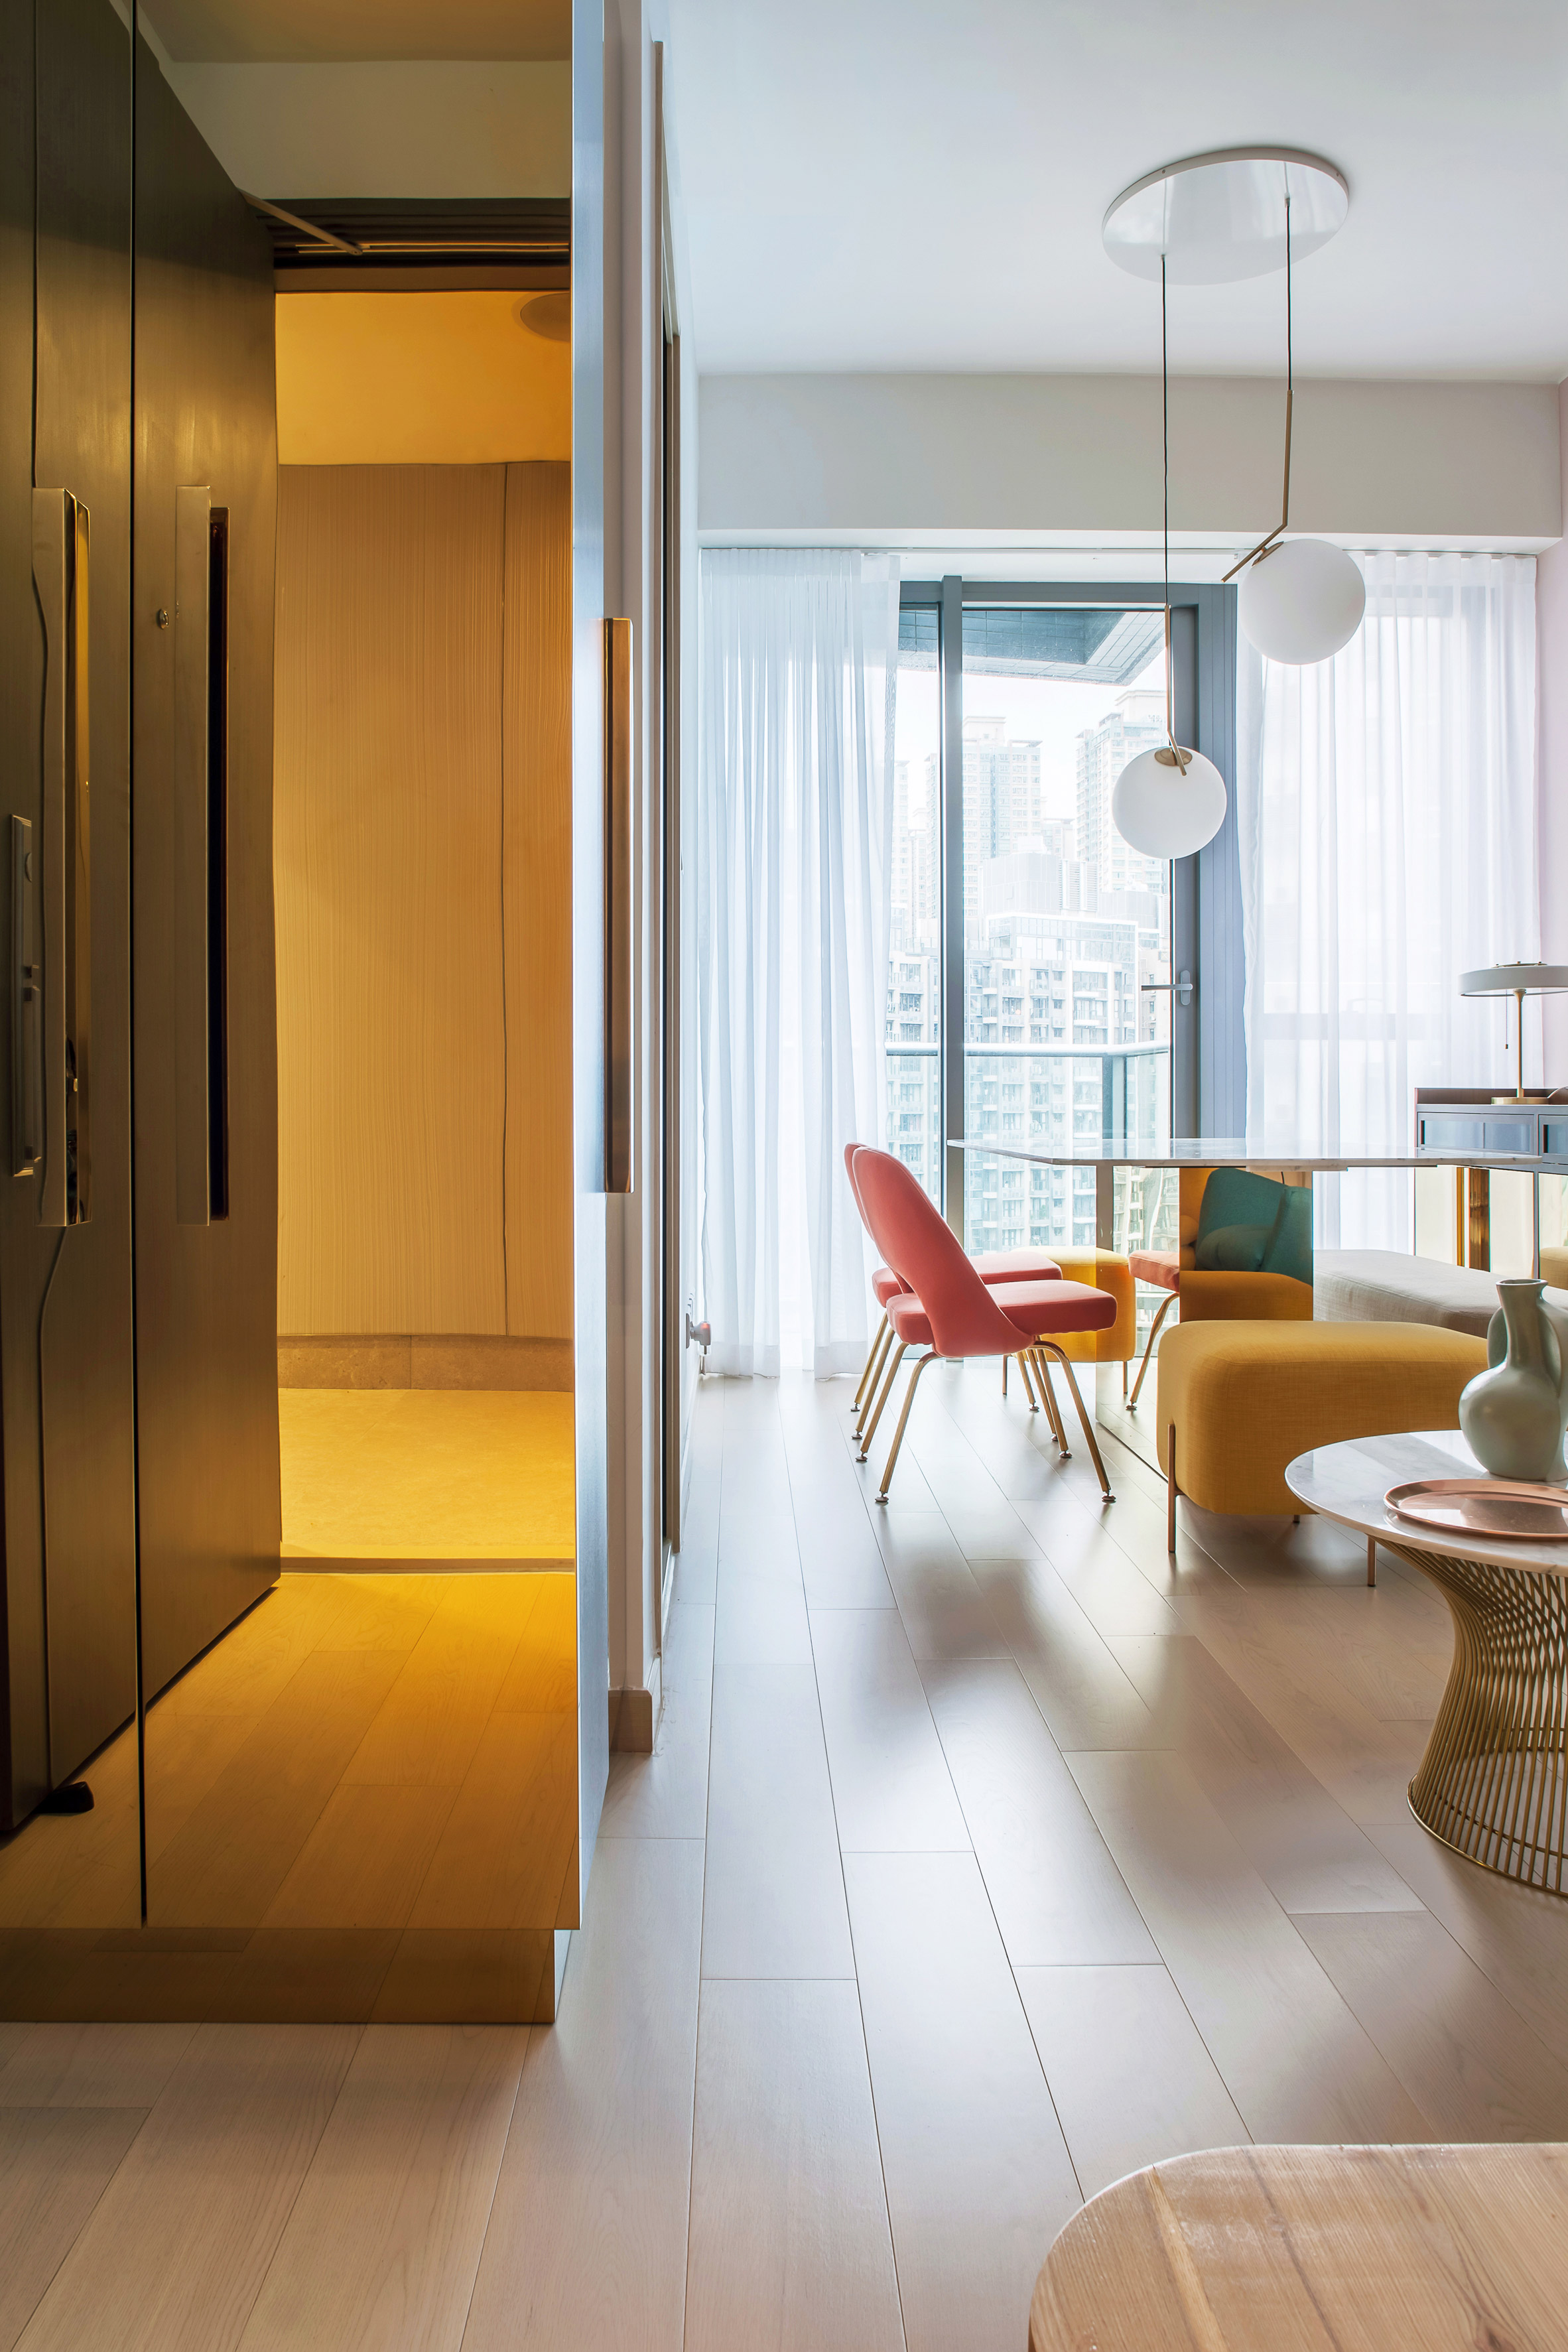 Thiết kế căn hộ với tường và đồ nội thất có màu rực rỡ dành riêng cho chủ nhân thiết kế thời trang - Ảnh 2.